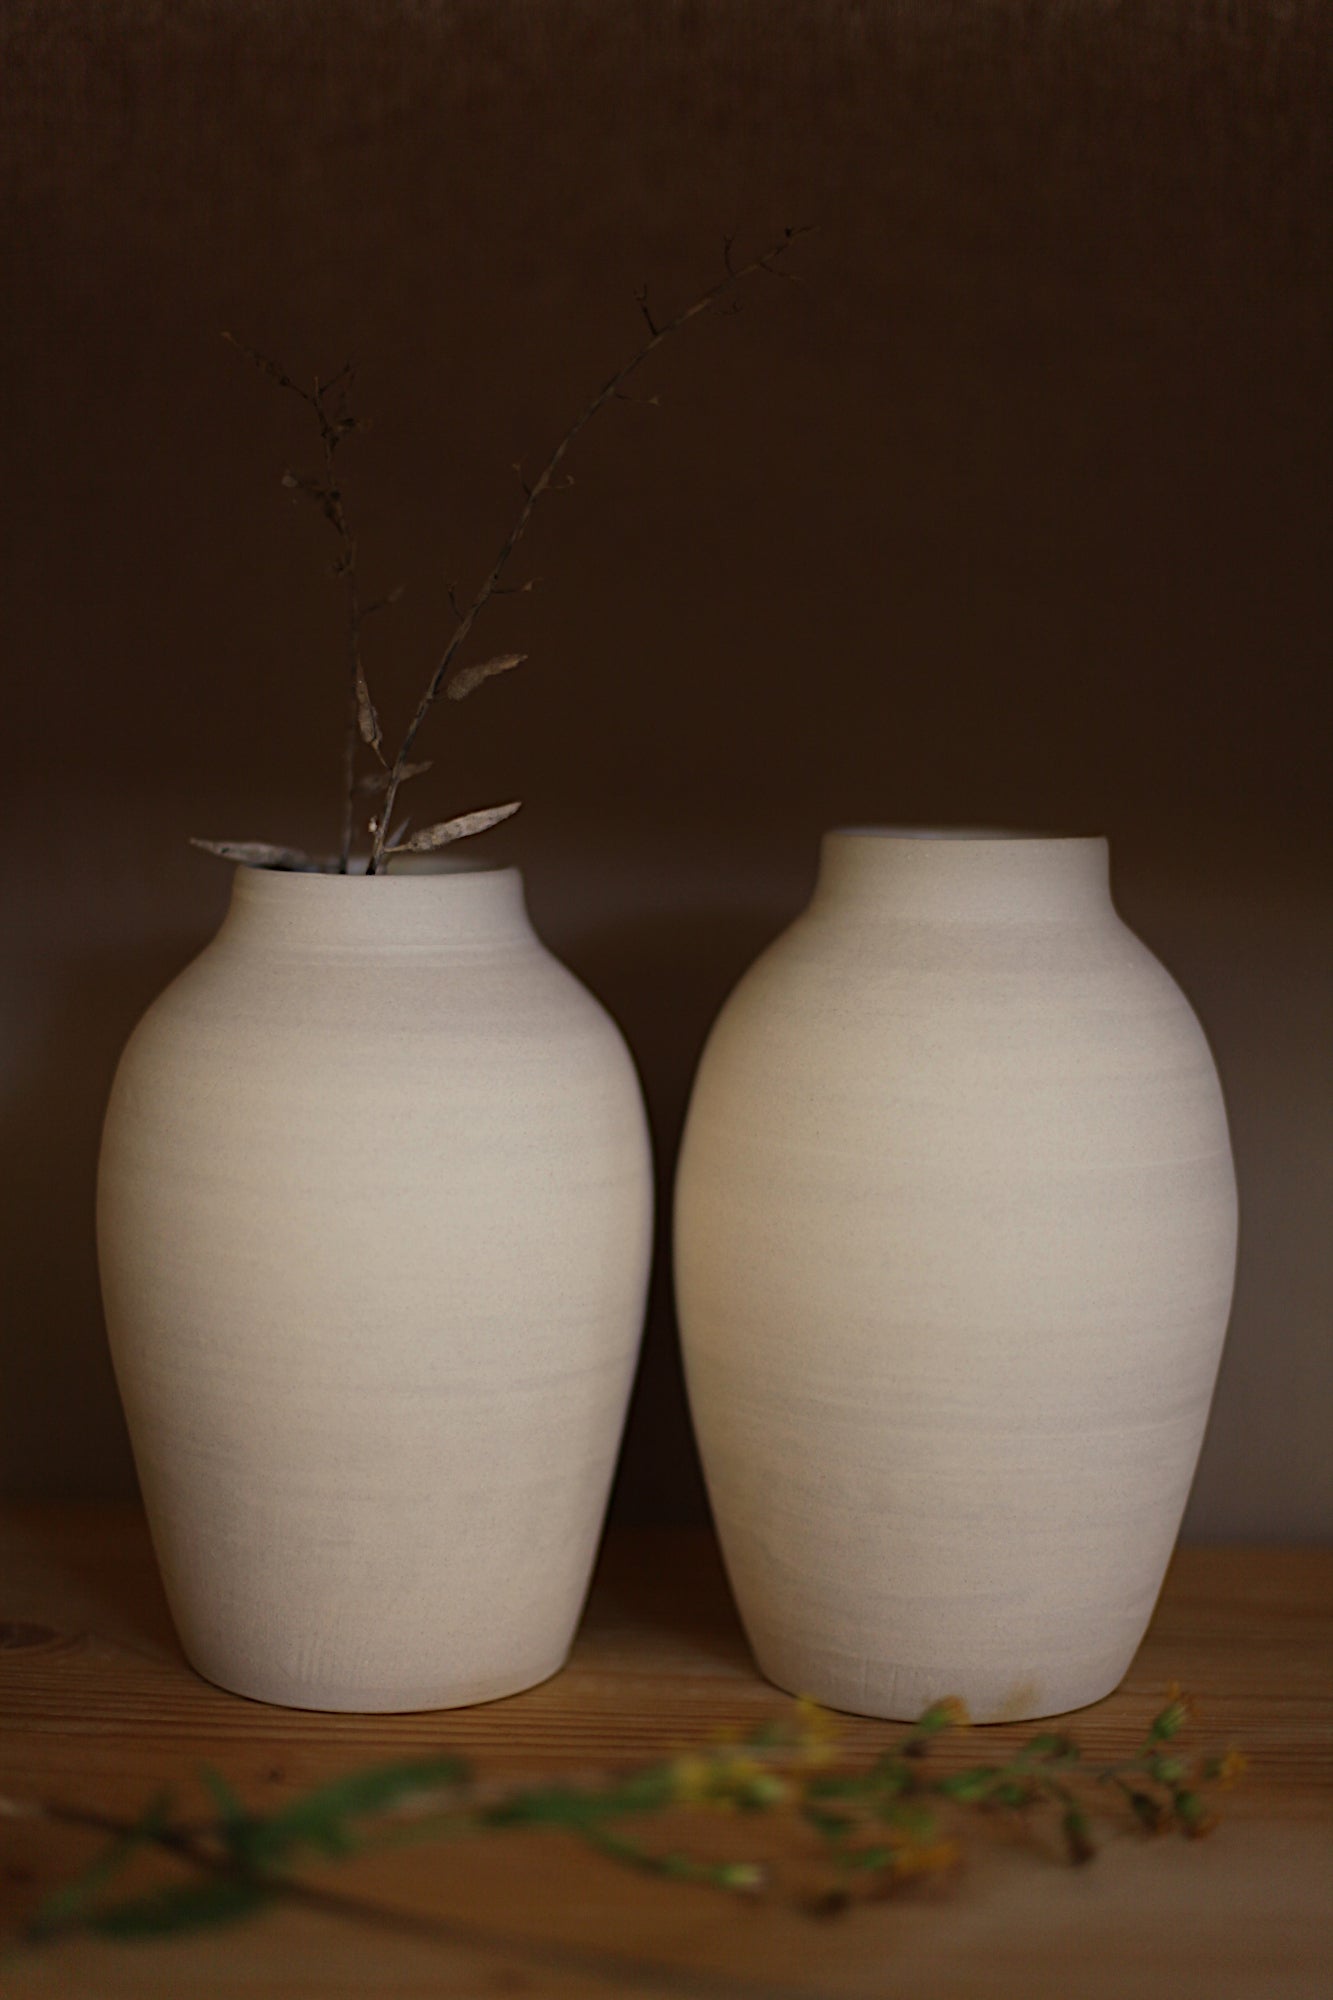 Off white stoneware vessel